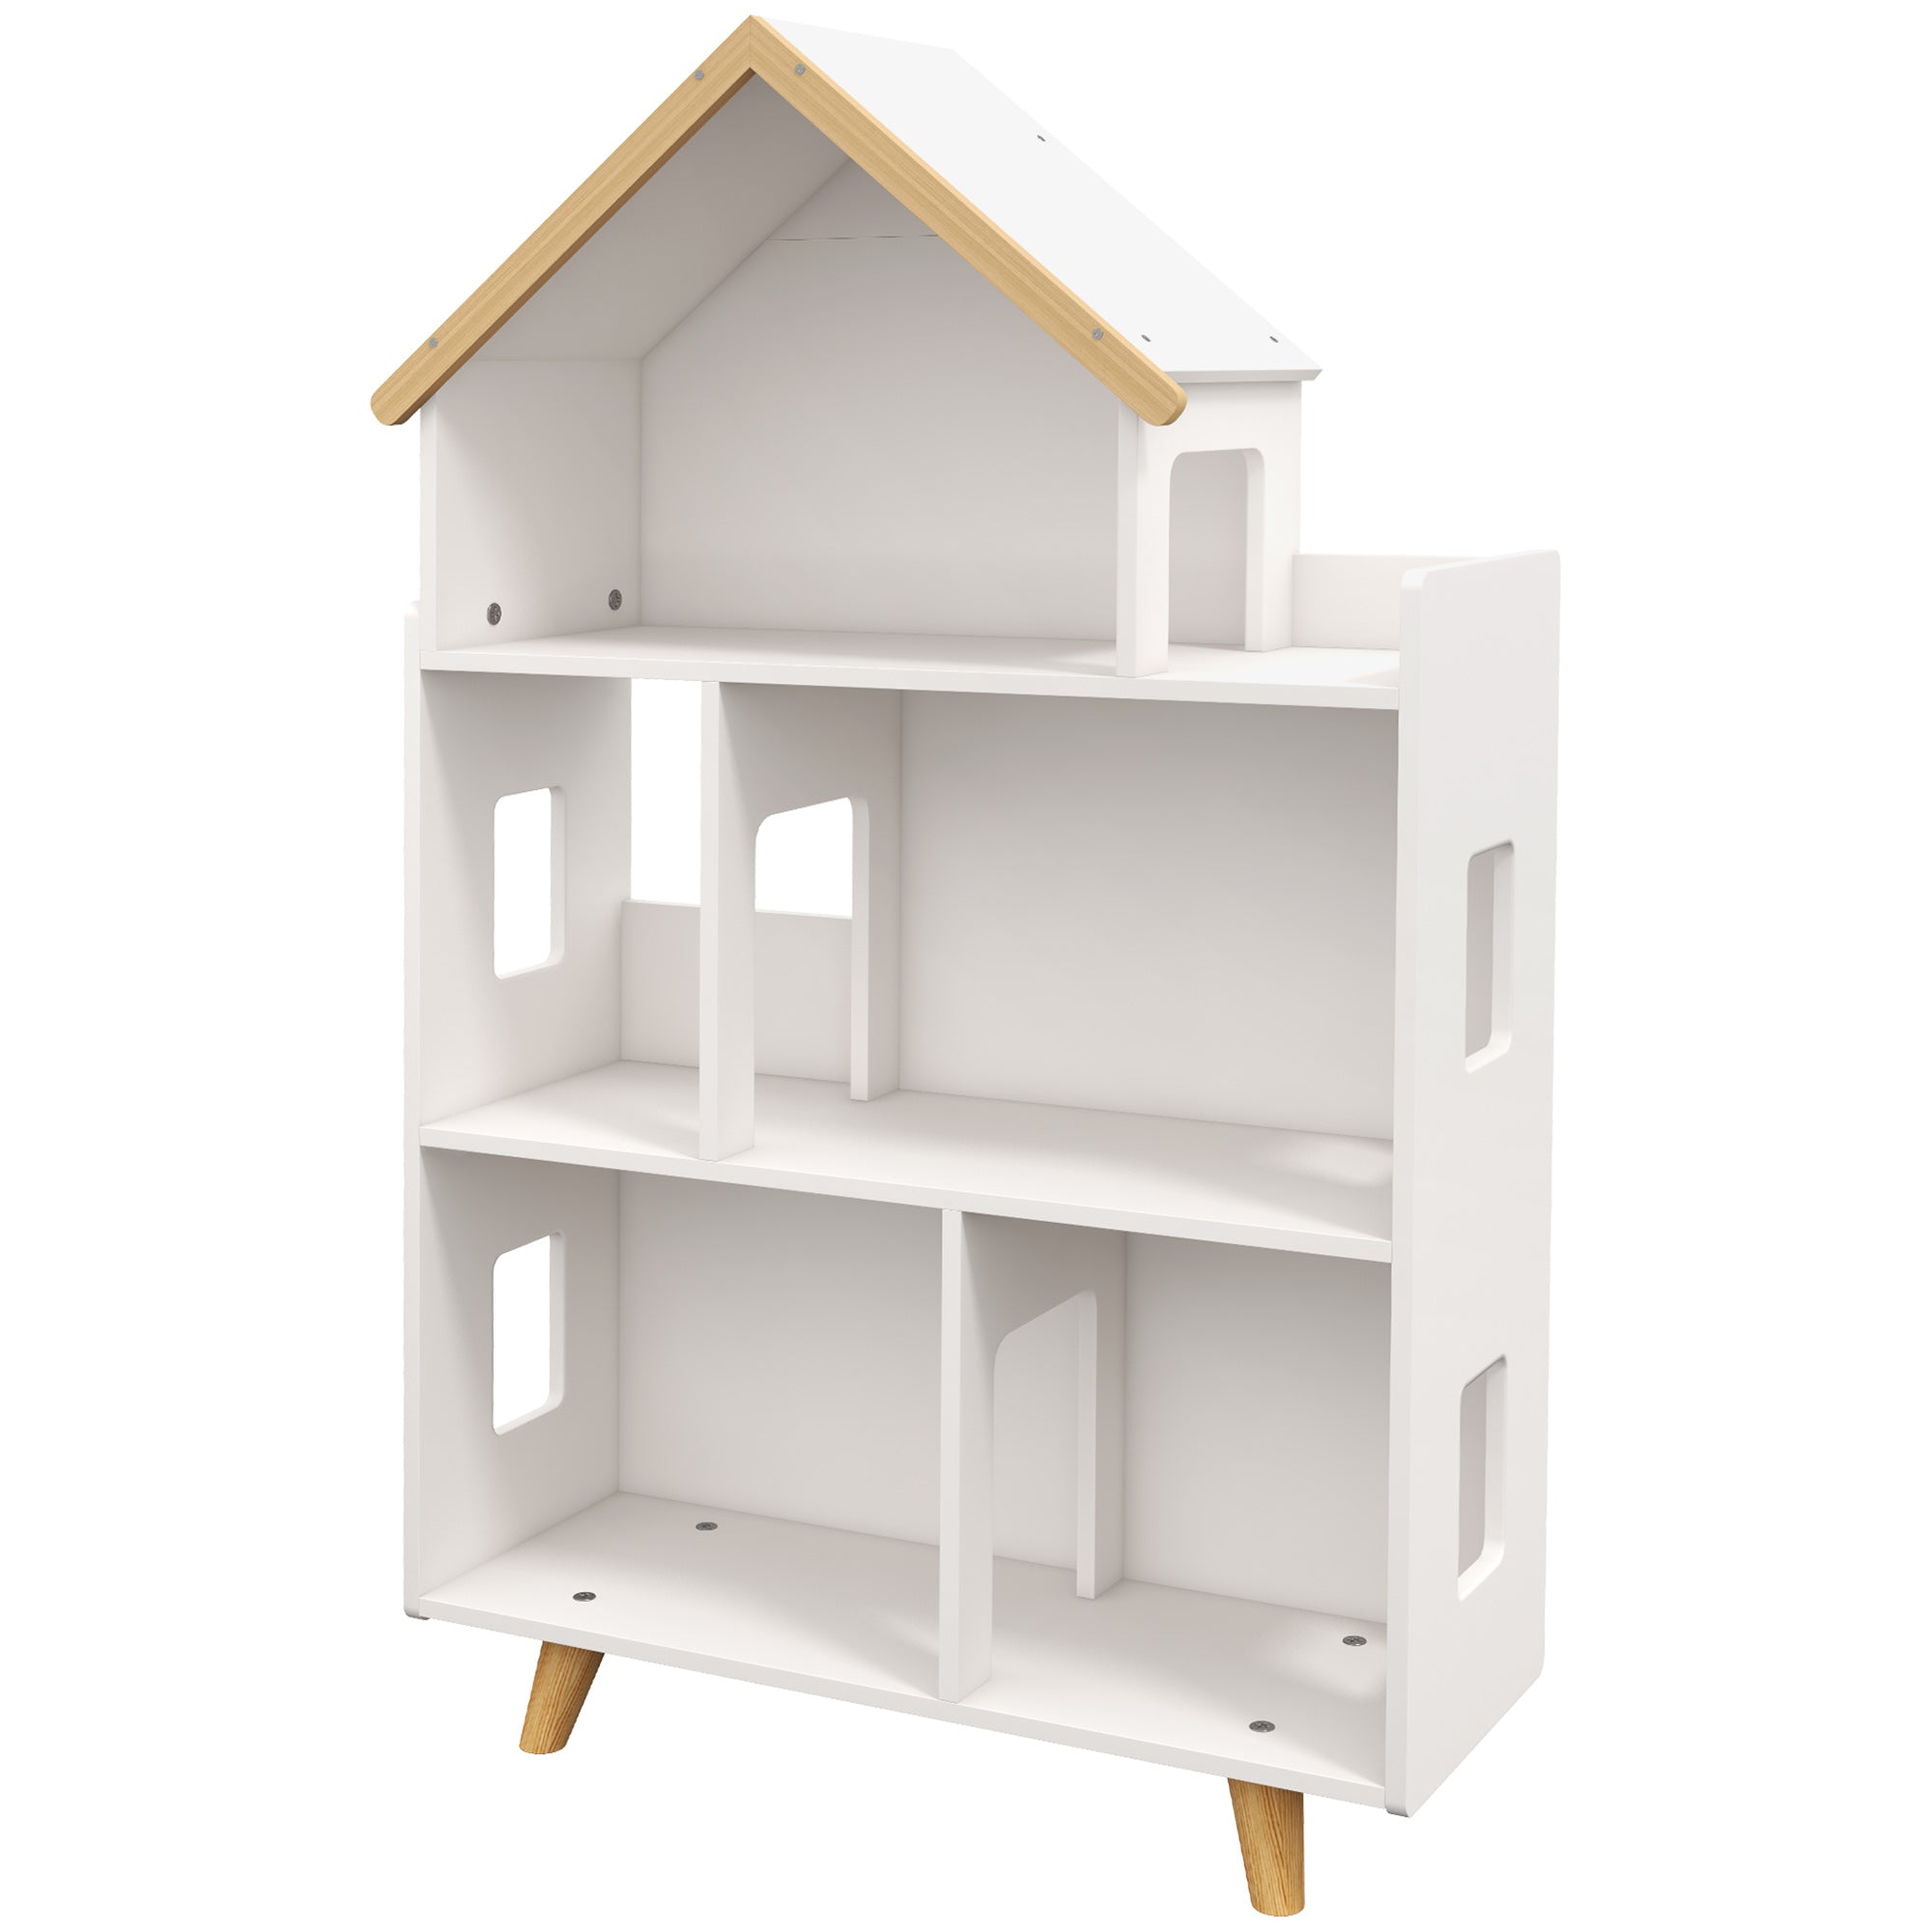 ZONEKIZ 3 Tier Toy Storage Shelf with 6 Cubby White